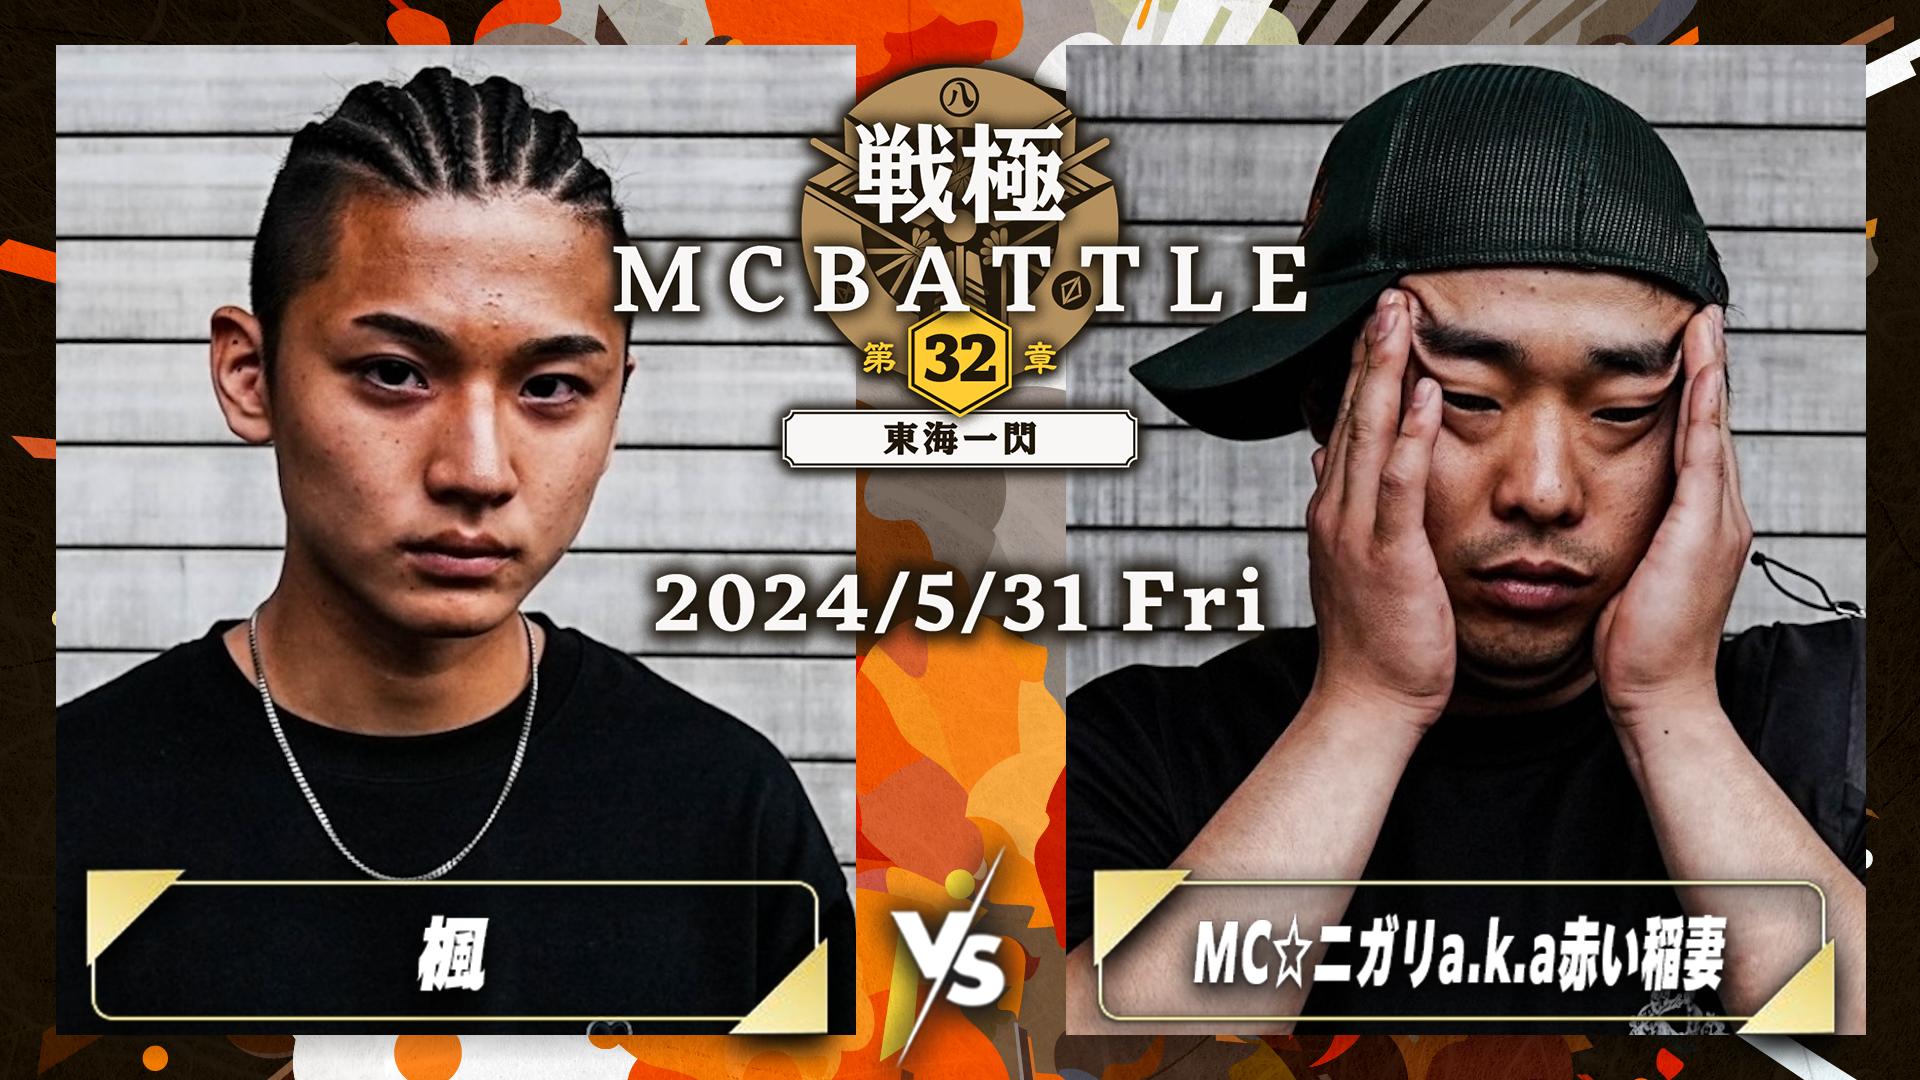 戦極MCBATTLE - 楓 vs MC☆ニガリa.k.a赤い稲妻【2回戦】